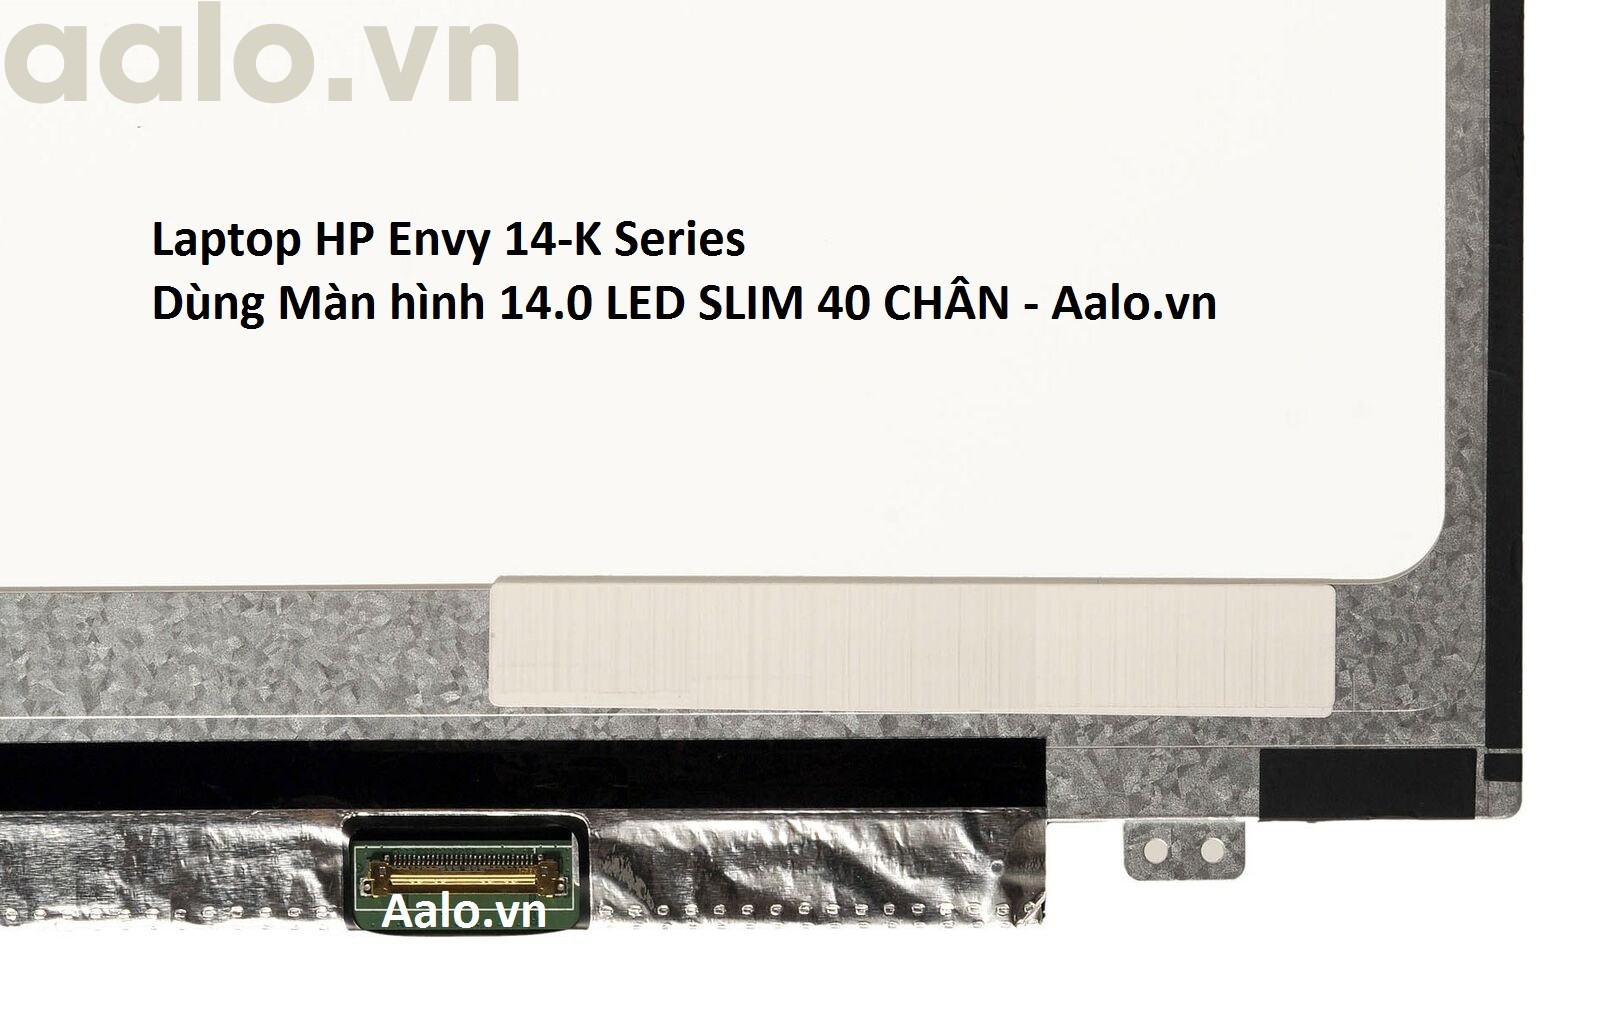 Màn hình Laptop HP Envy 14-K Series